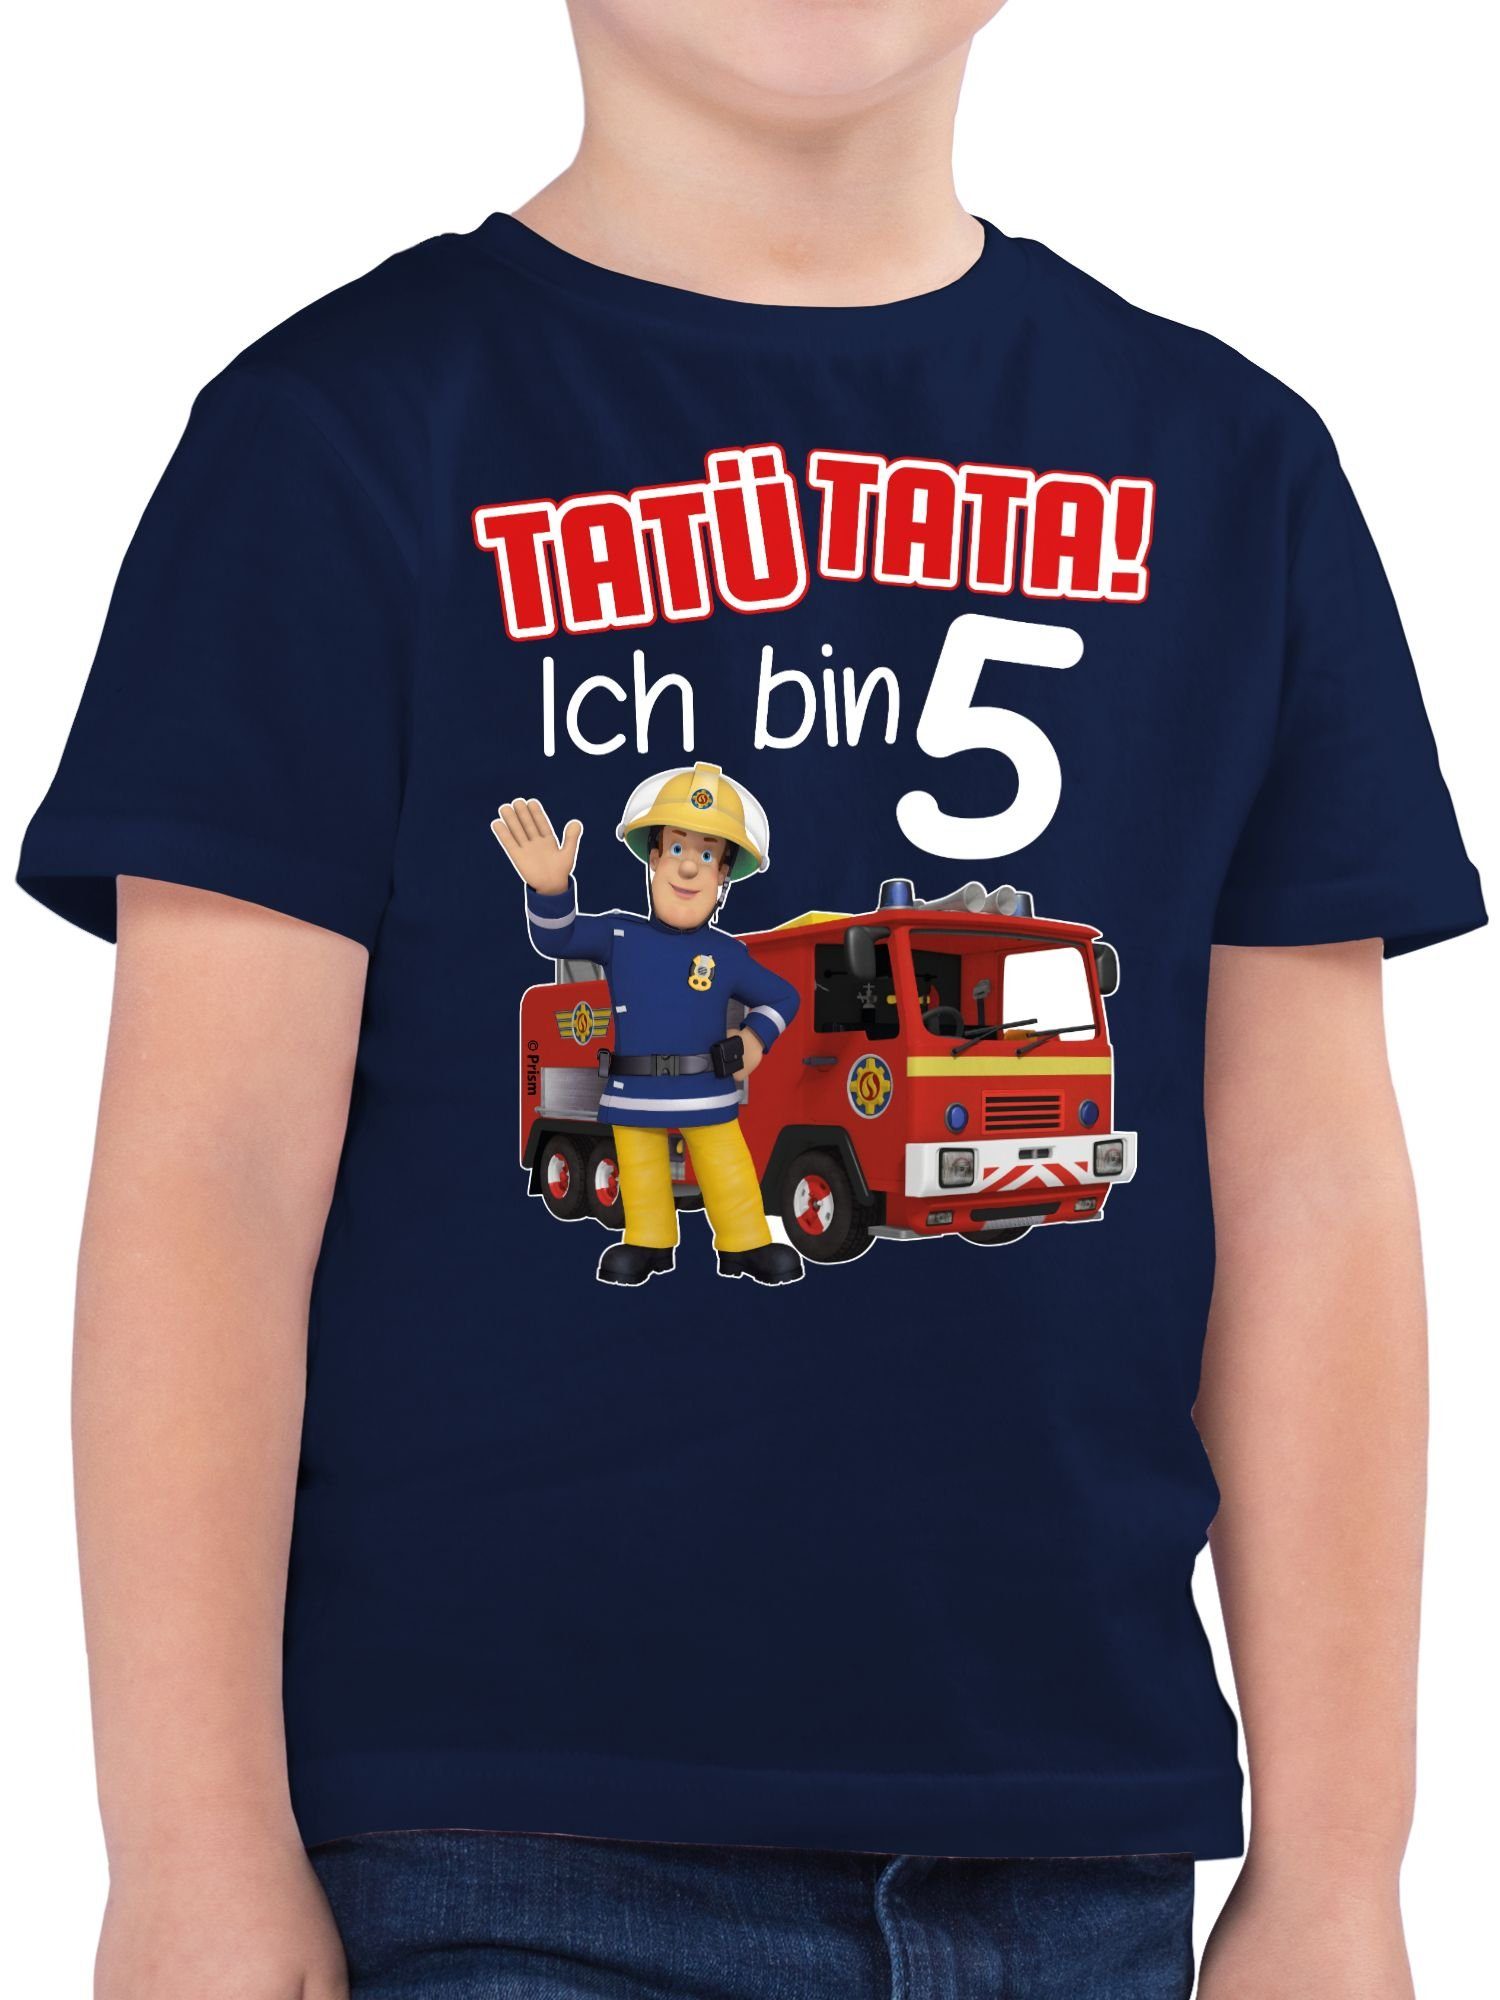 02 Sam Jungen Tata! 5 bin - Feuerwehrmann T-Shirt Ich rot Dunkelblau Tatü Shirtracer